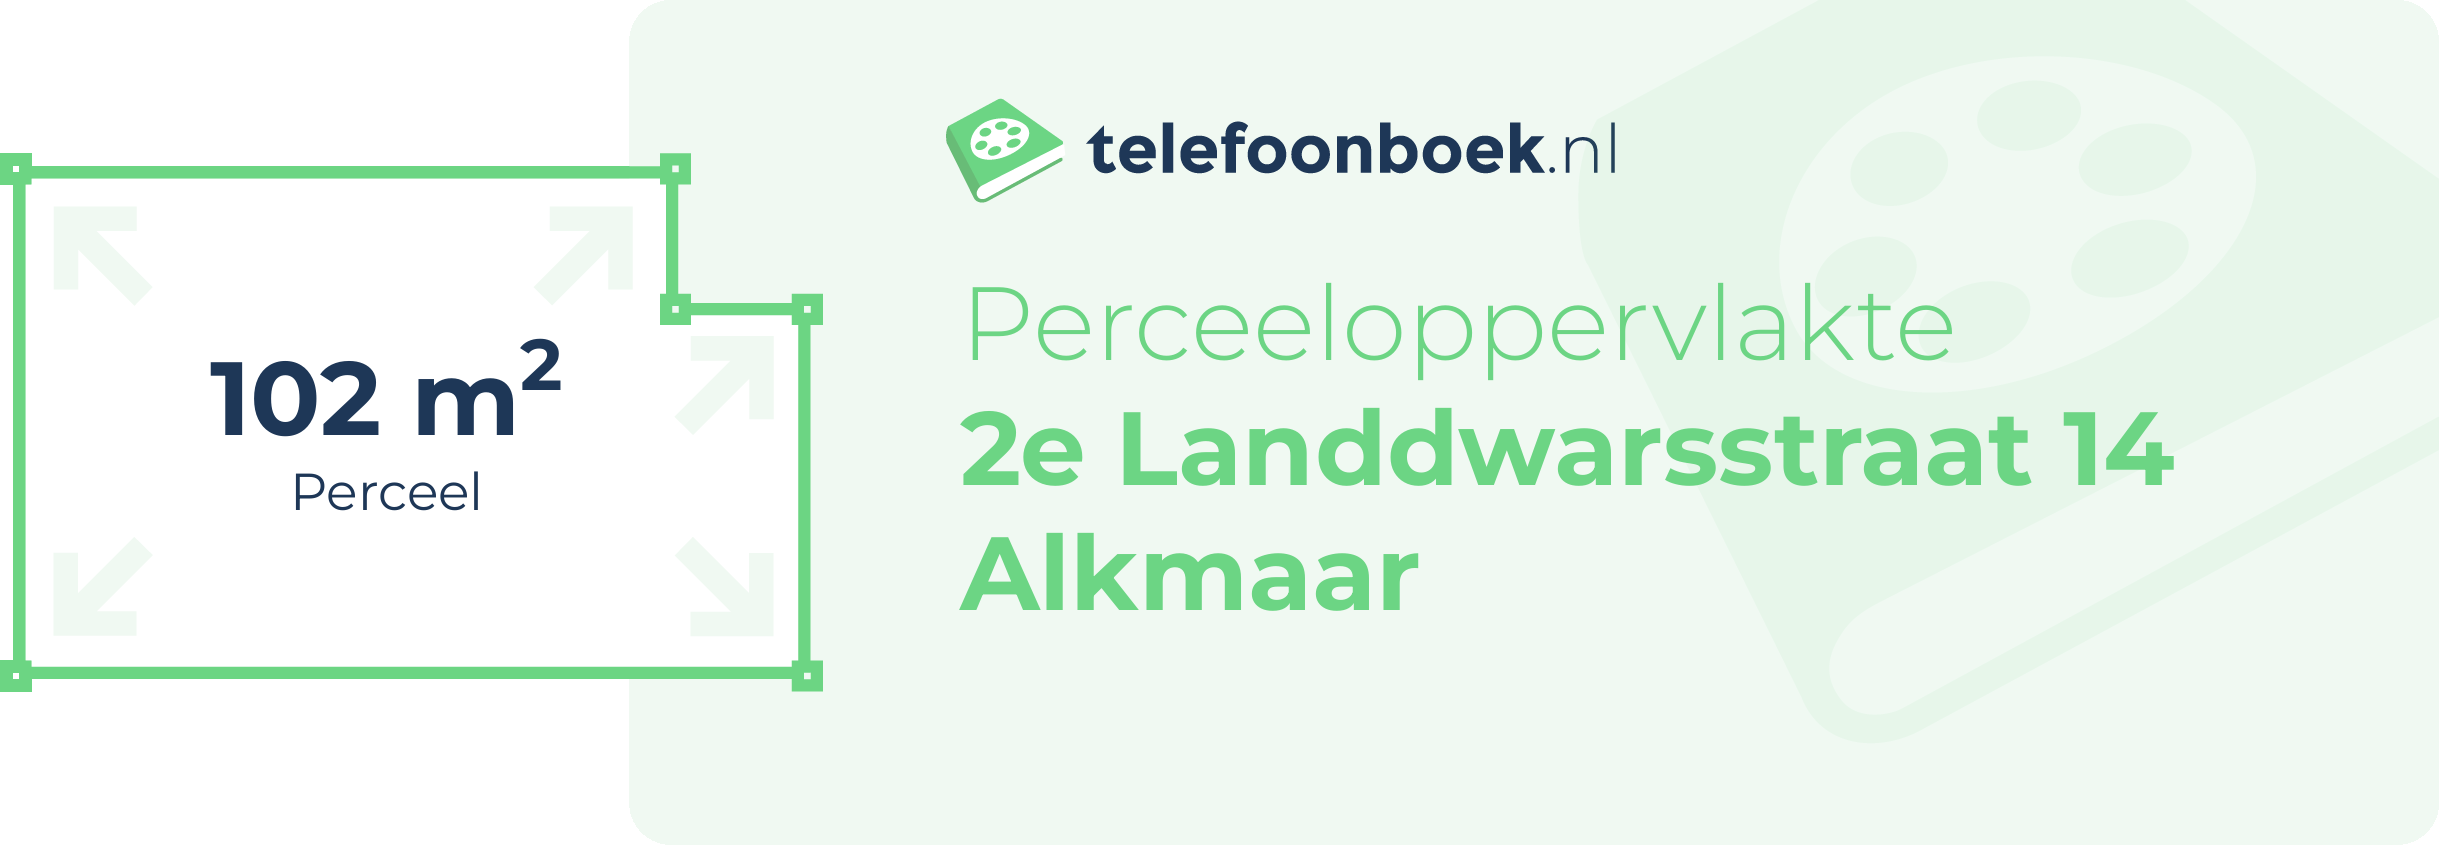 Perceeloppervlakte 2e Landdwarsstraat 14 Alkmaar